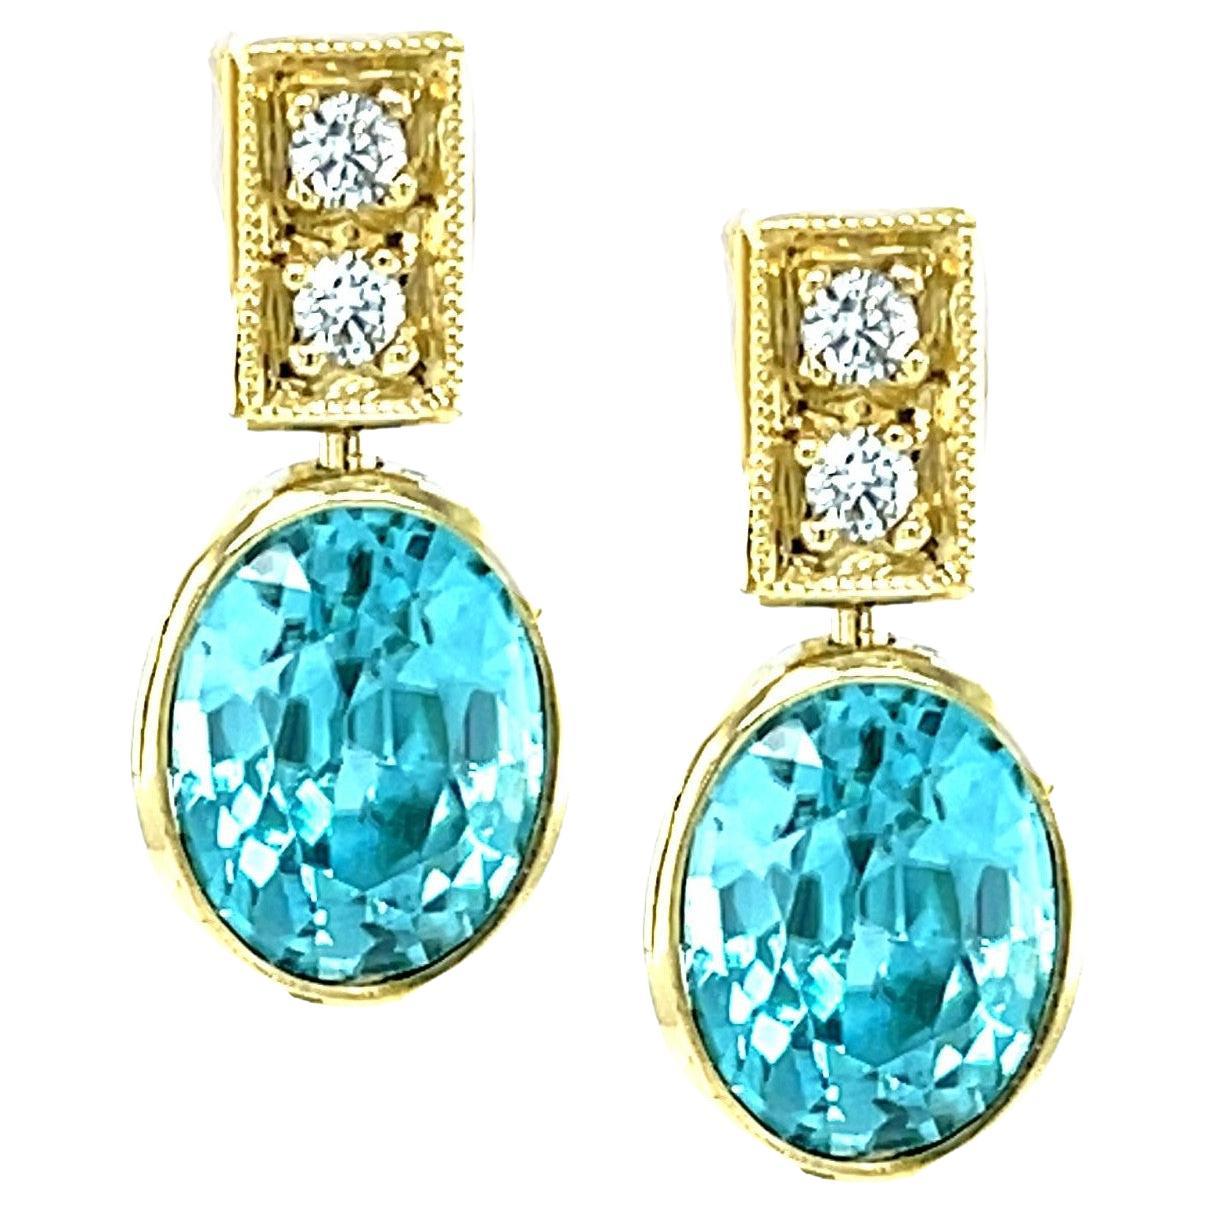 Blaue Zirkon- und Diamant-Tropfen-Ohrringe aus Gelbgold, insgesamt 9,38 Karat